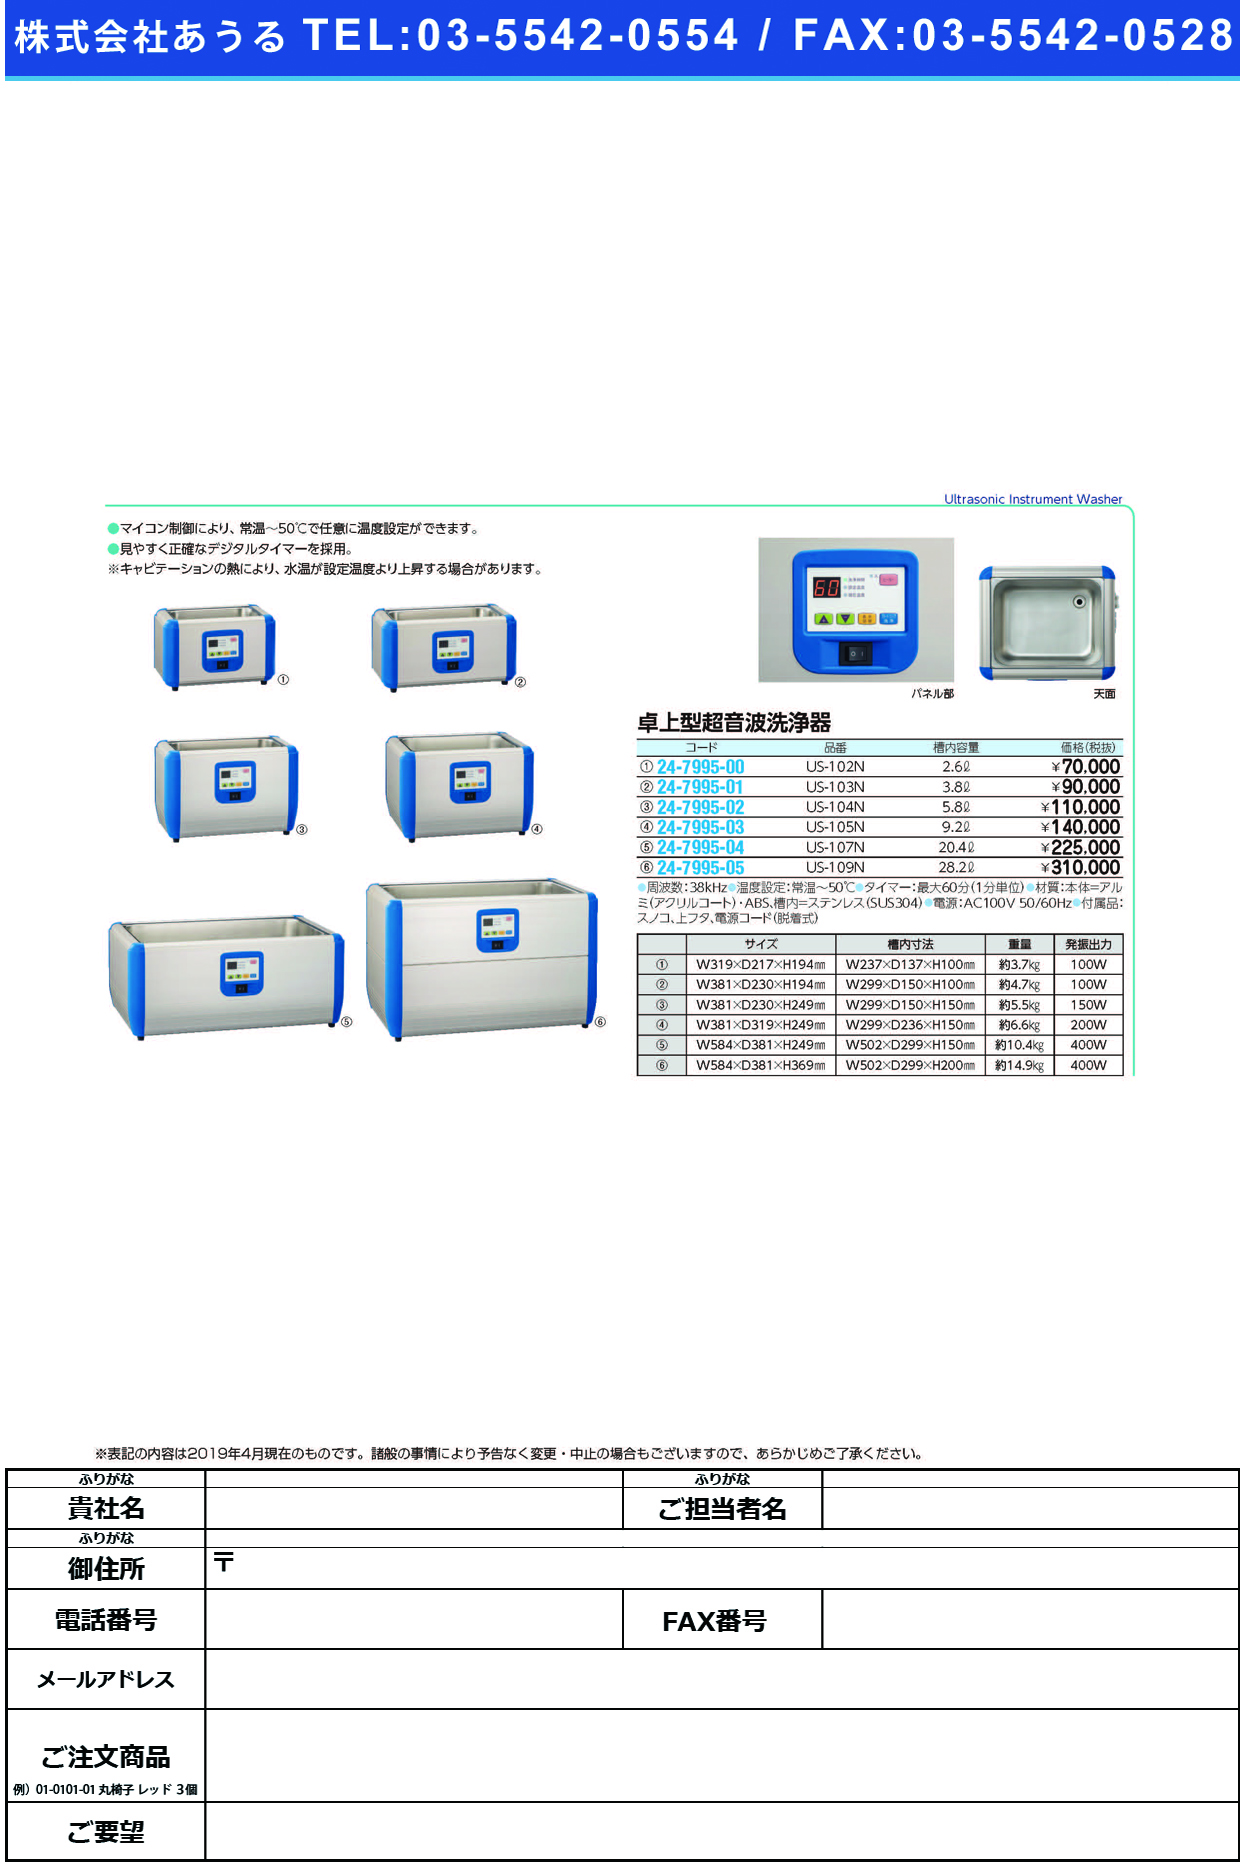 (24-7995-02)卓上型超音波洗浄器US-104N ﾀｸｼﾞｮｳｶﾞﾀﾁｮｳｵﾝﾊﾟｾﾝｼﾞ(三商)【1台単位】【2019年カタログ商品】